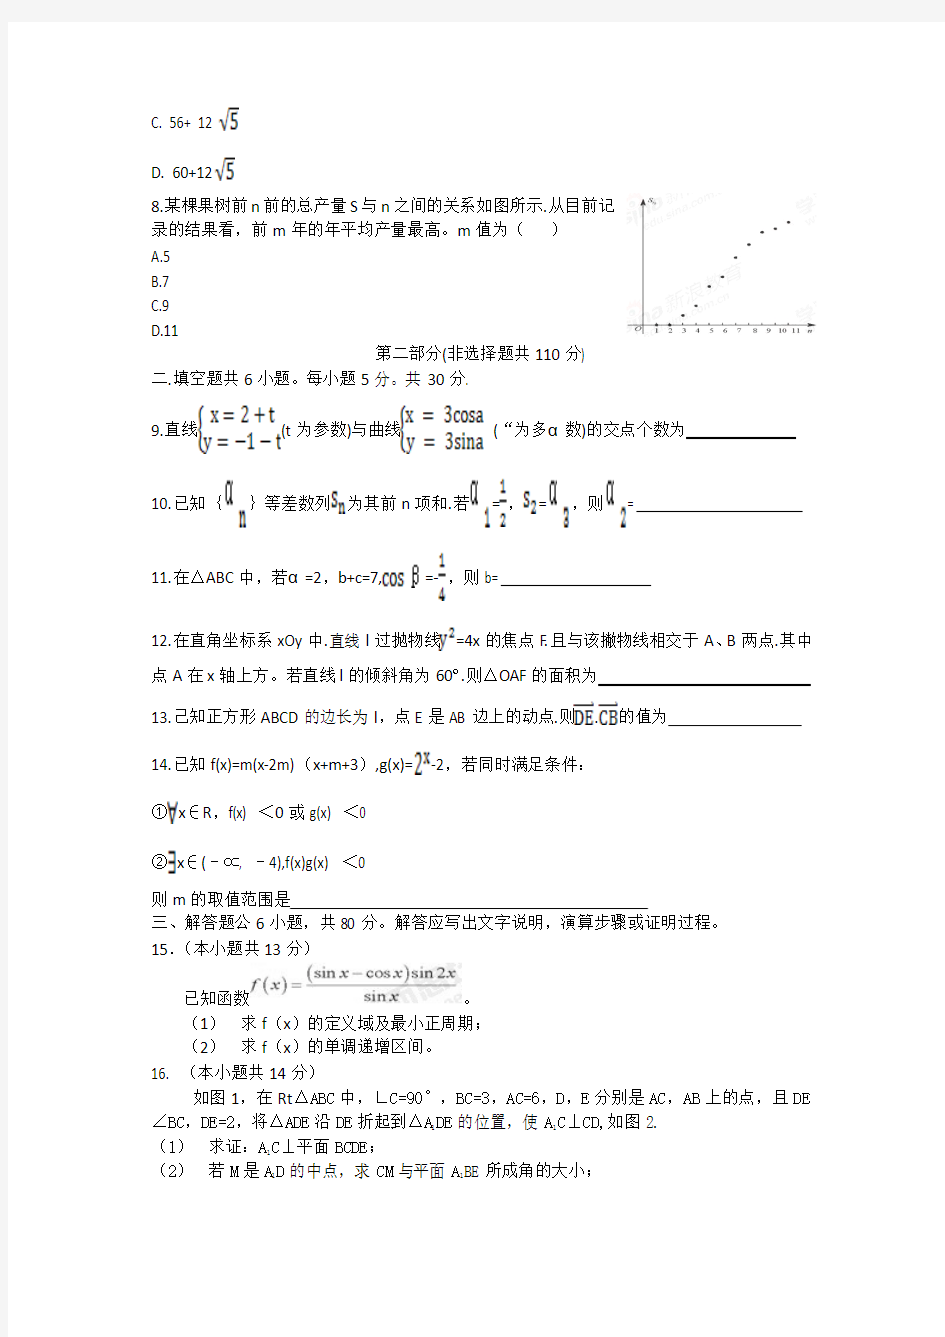 2012高考试题(北京)理科数学